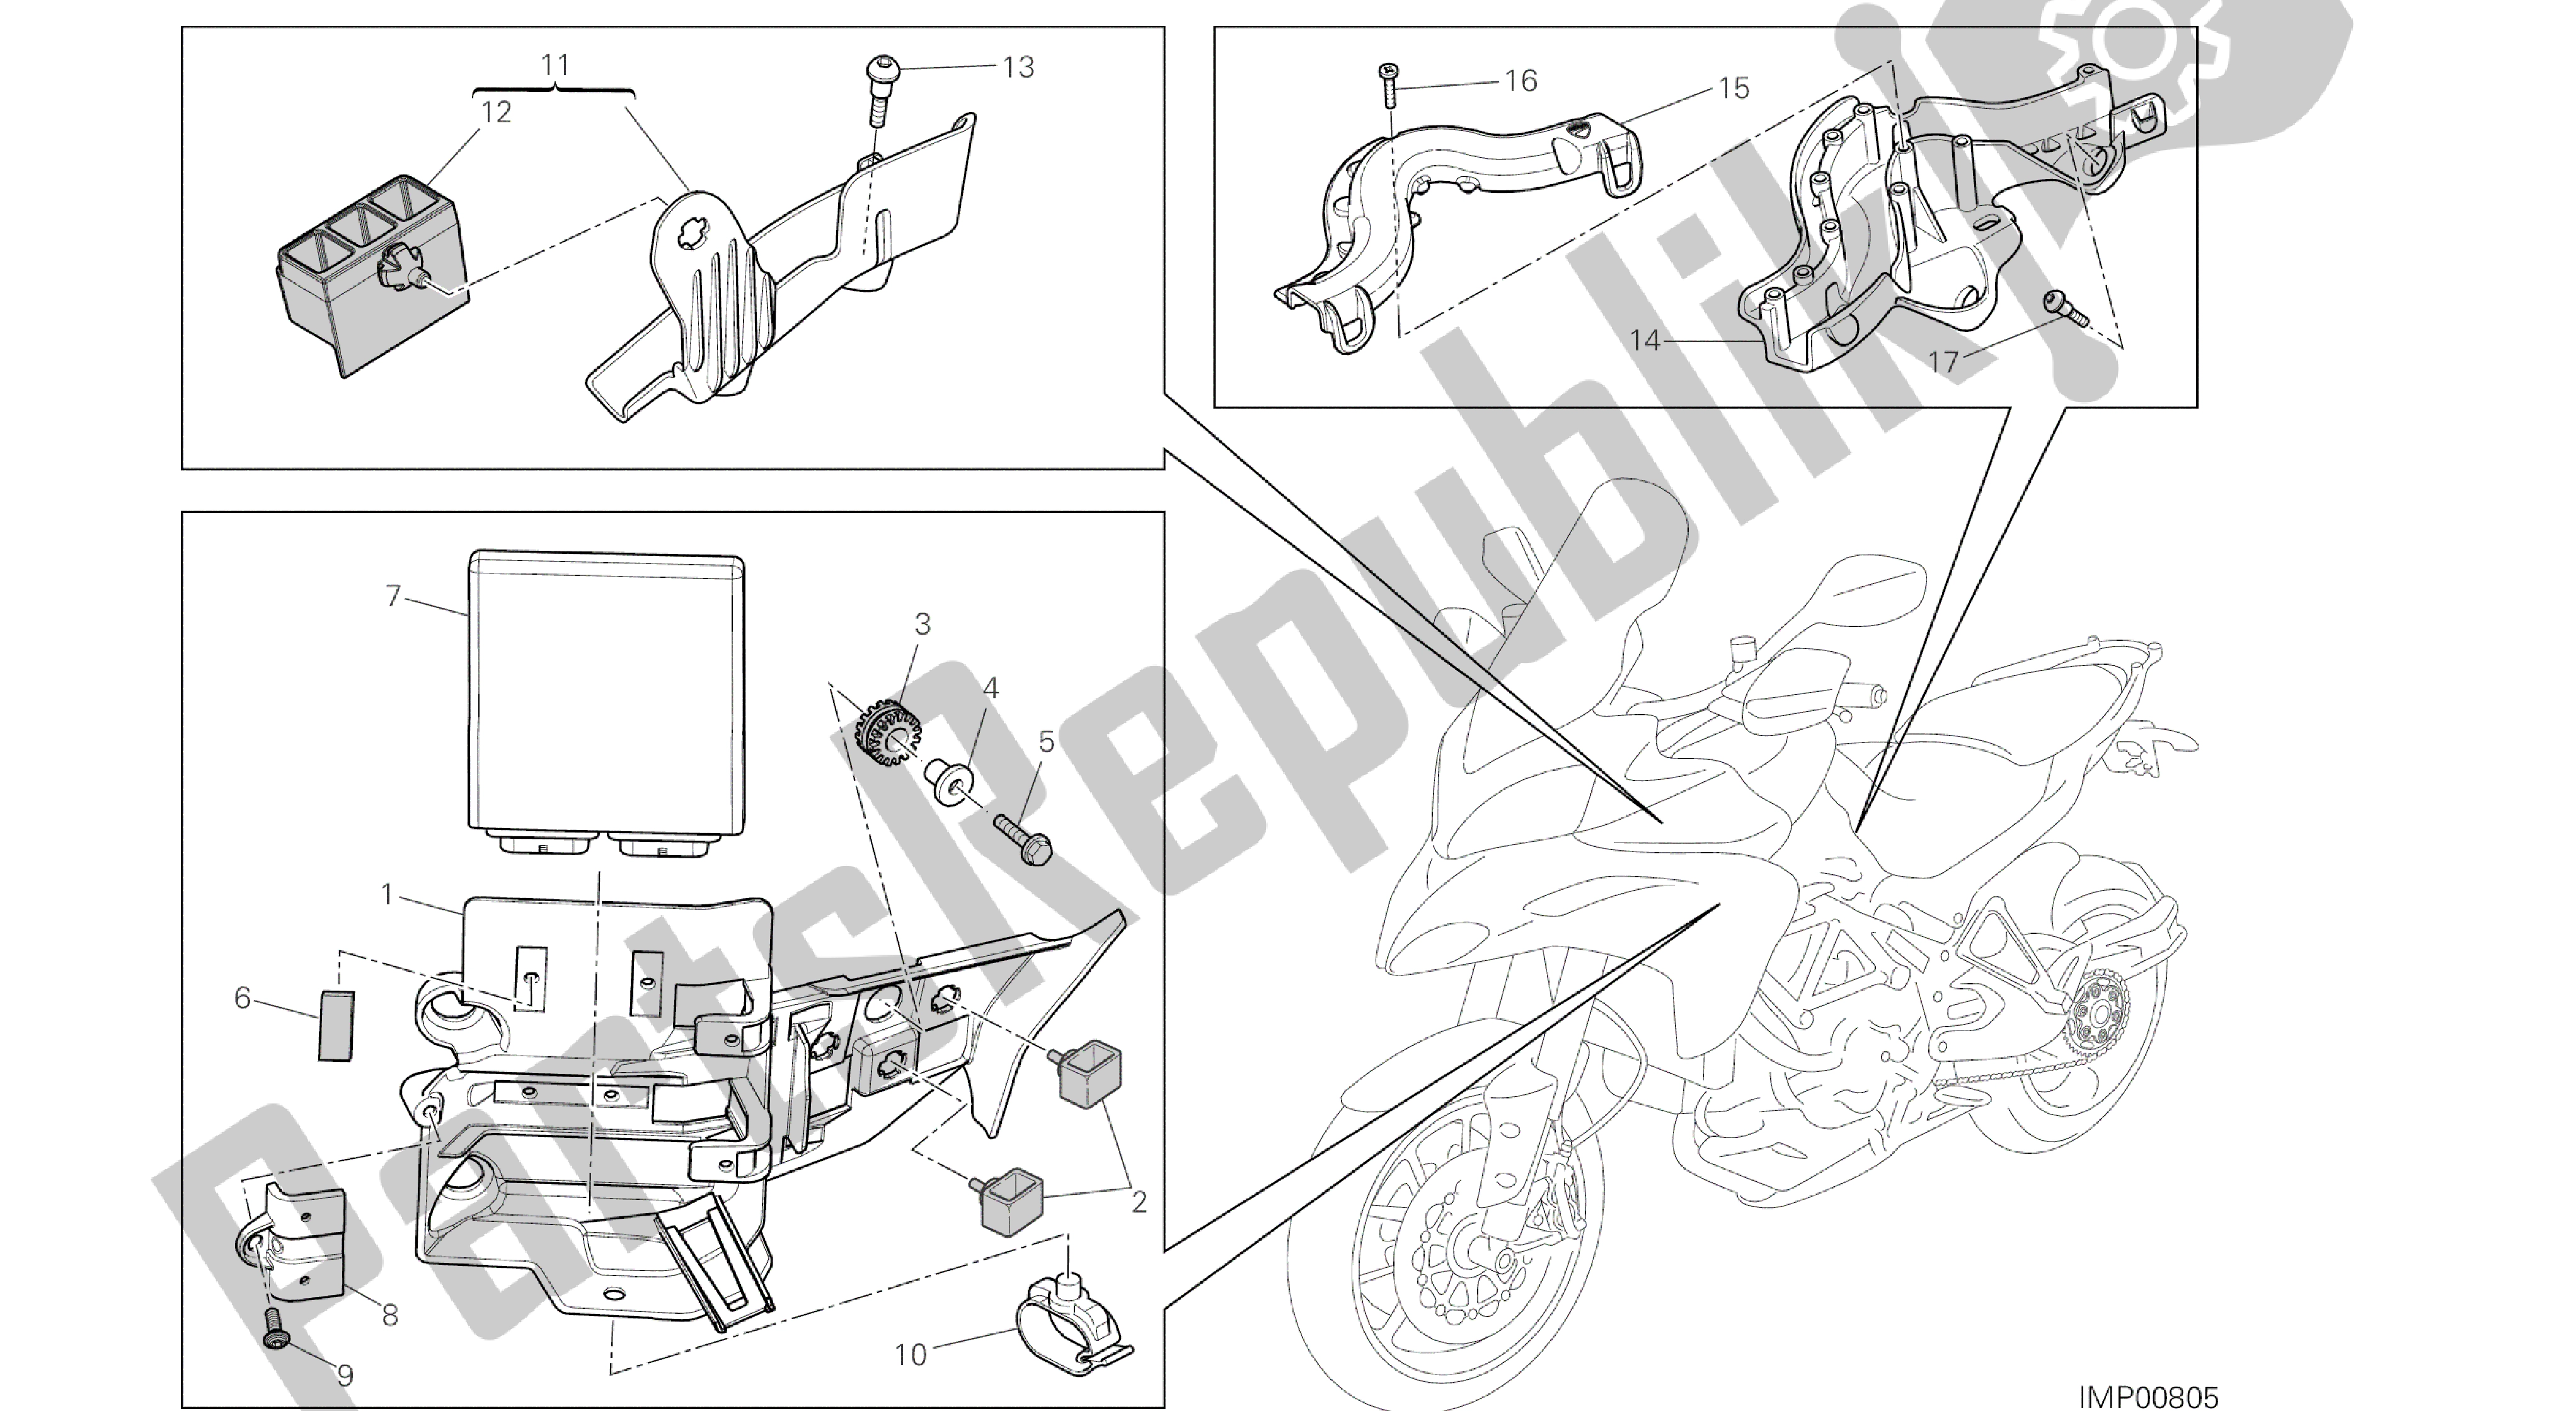 Tutte le parti per il Disegno 18a - Centralina Motore [mod: Ms1200st; Xst: Aus, Chn, Eur, Fra, Jap, Tha] Gruppo Elettrico del Ducati Multistrada S Touring 1200 2014